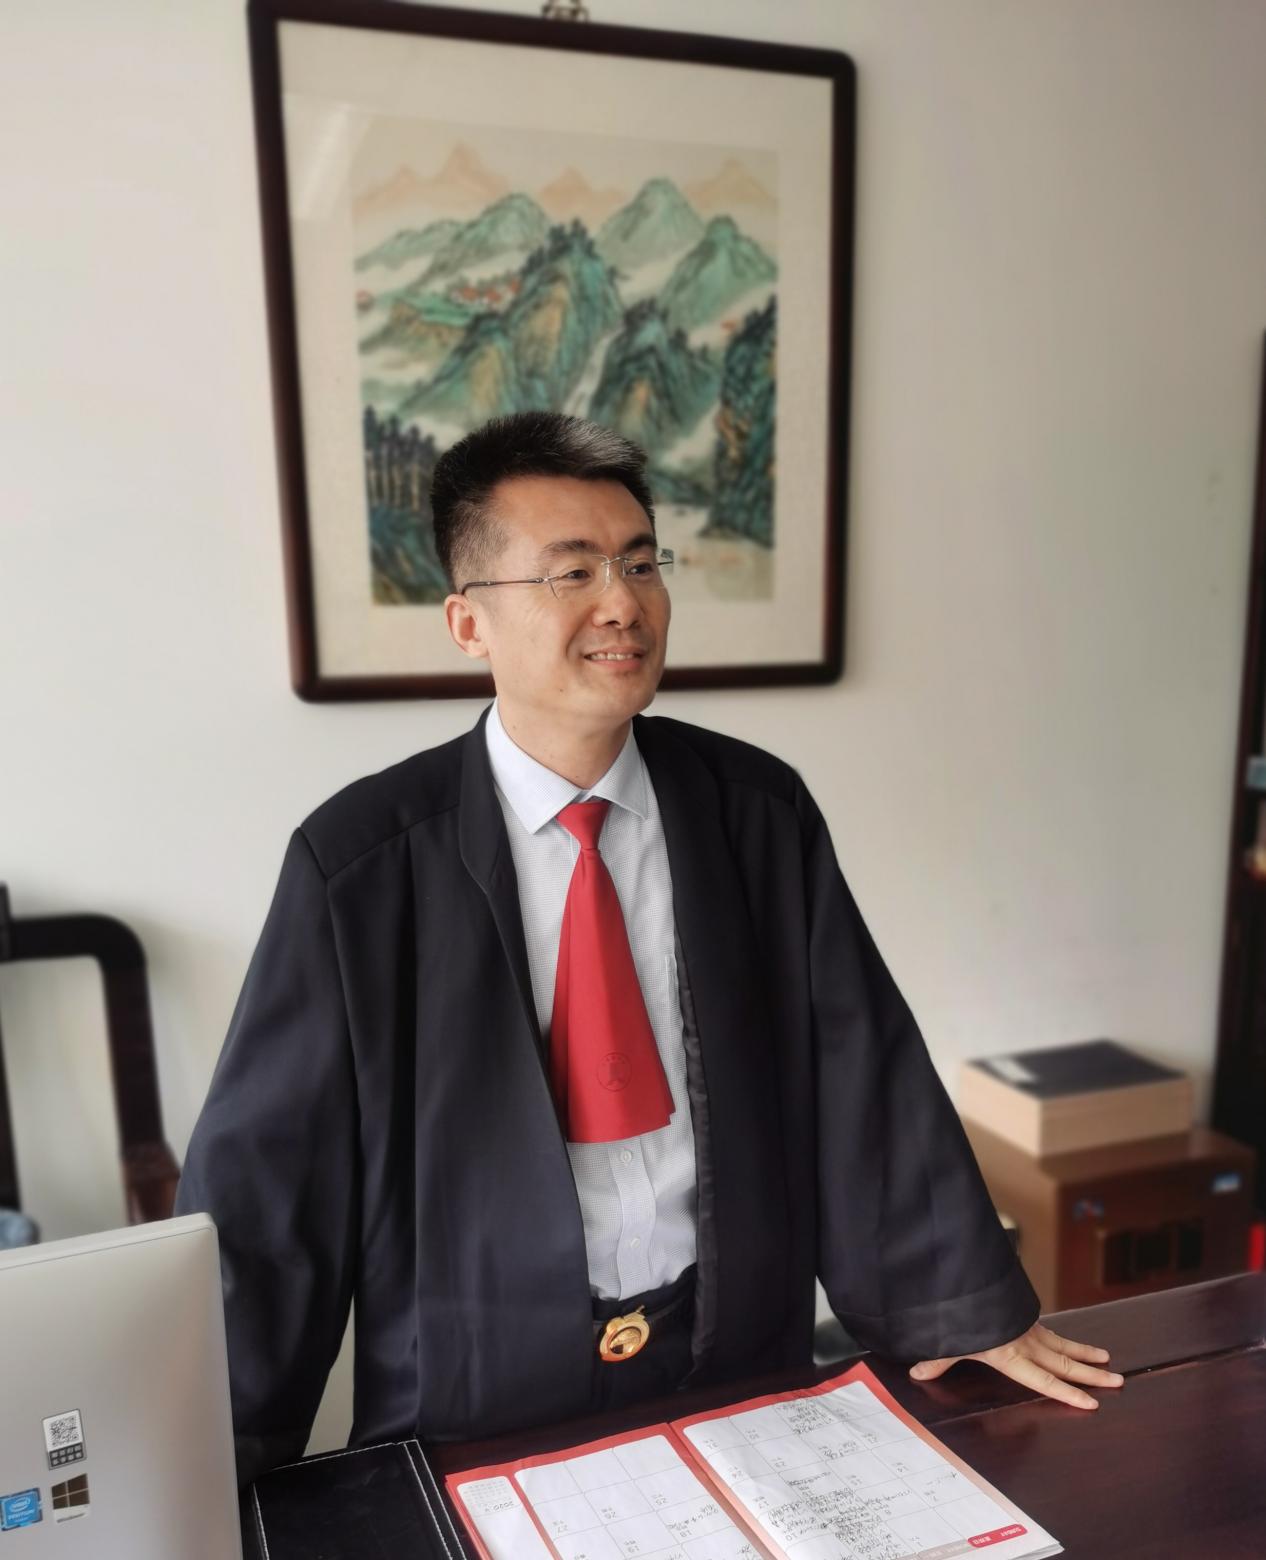 律师精神是一种信念的传承——访福和律所主任陈楠